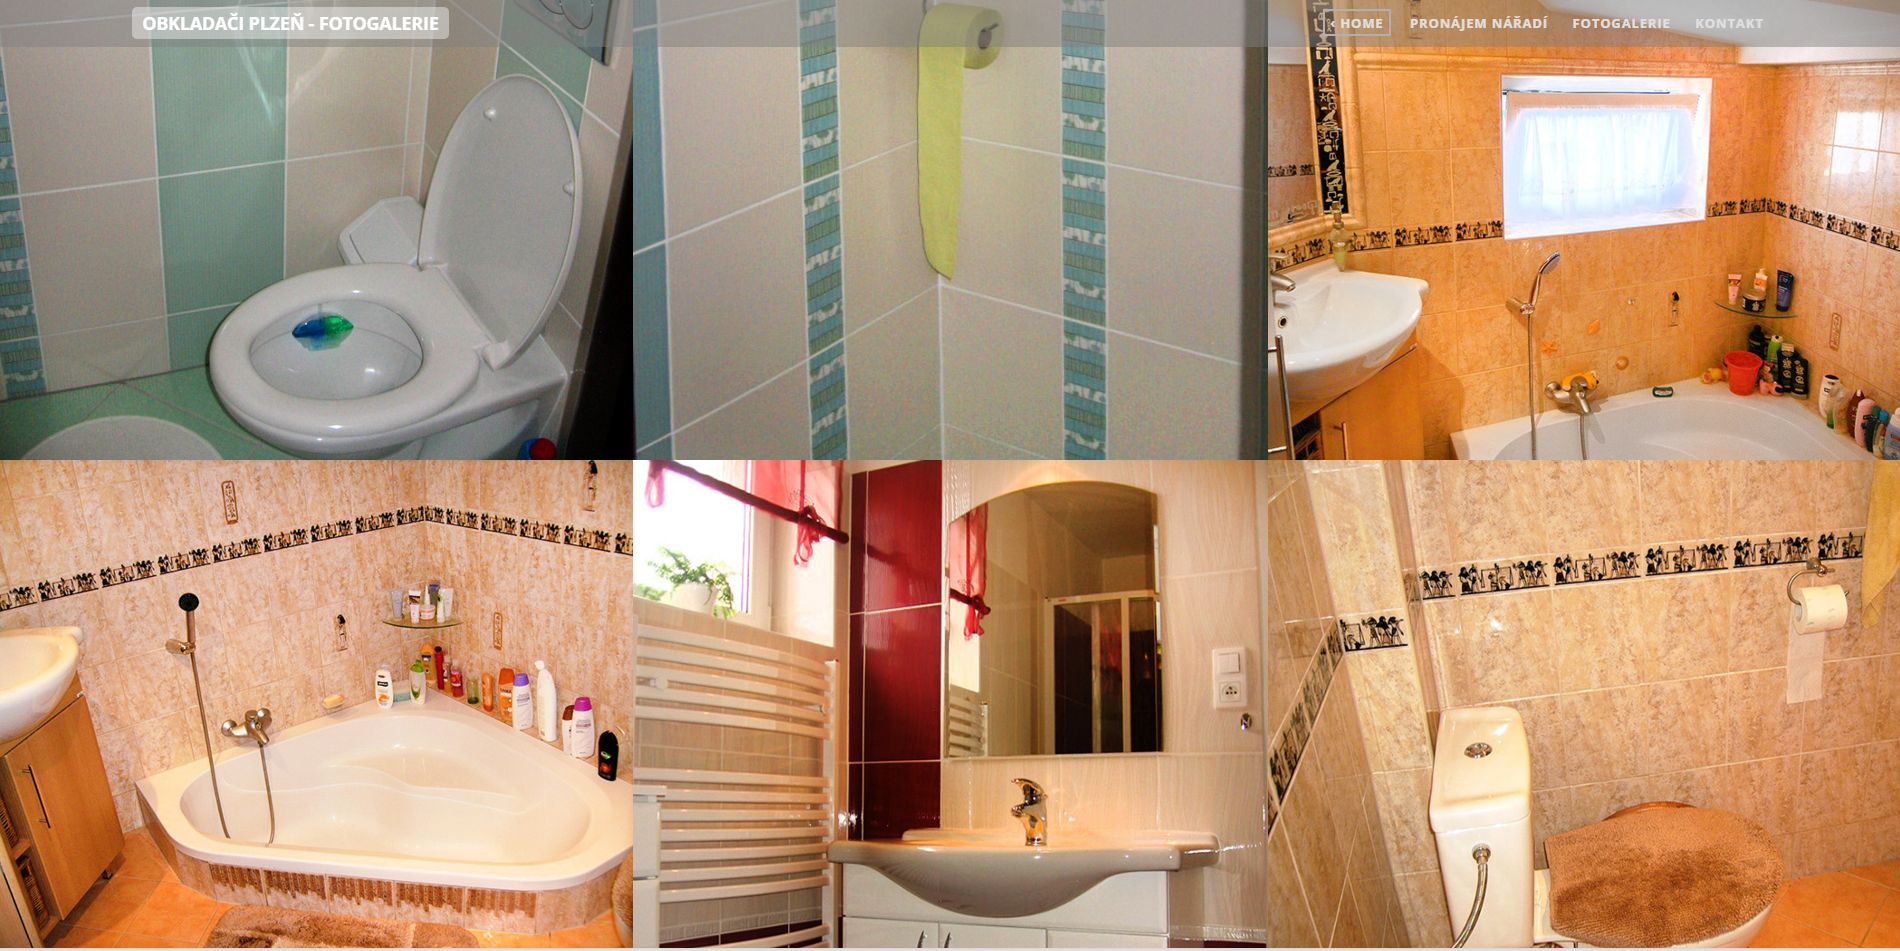 rekonstrukce koupelny - provedené obkladačské práce nejen v Plzni